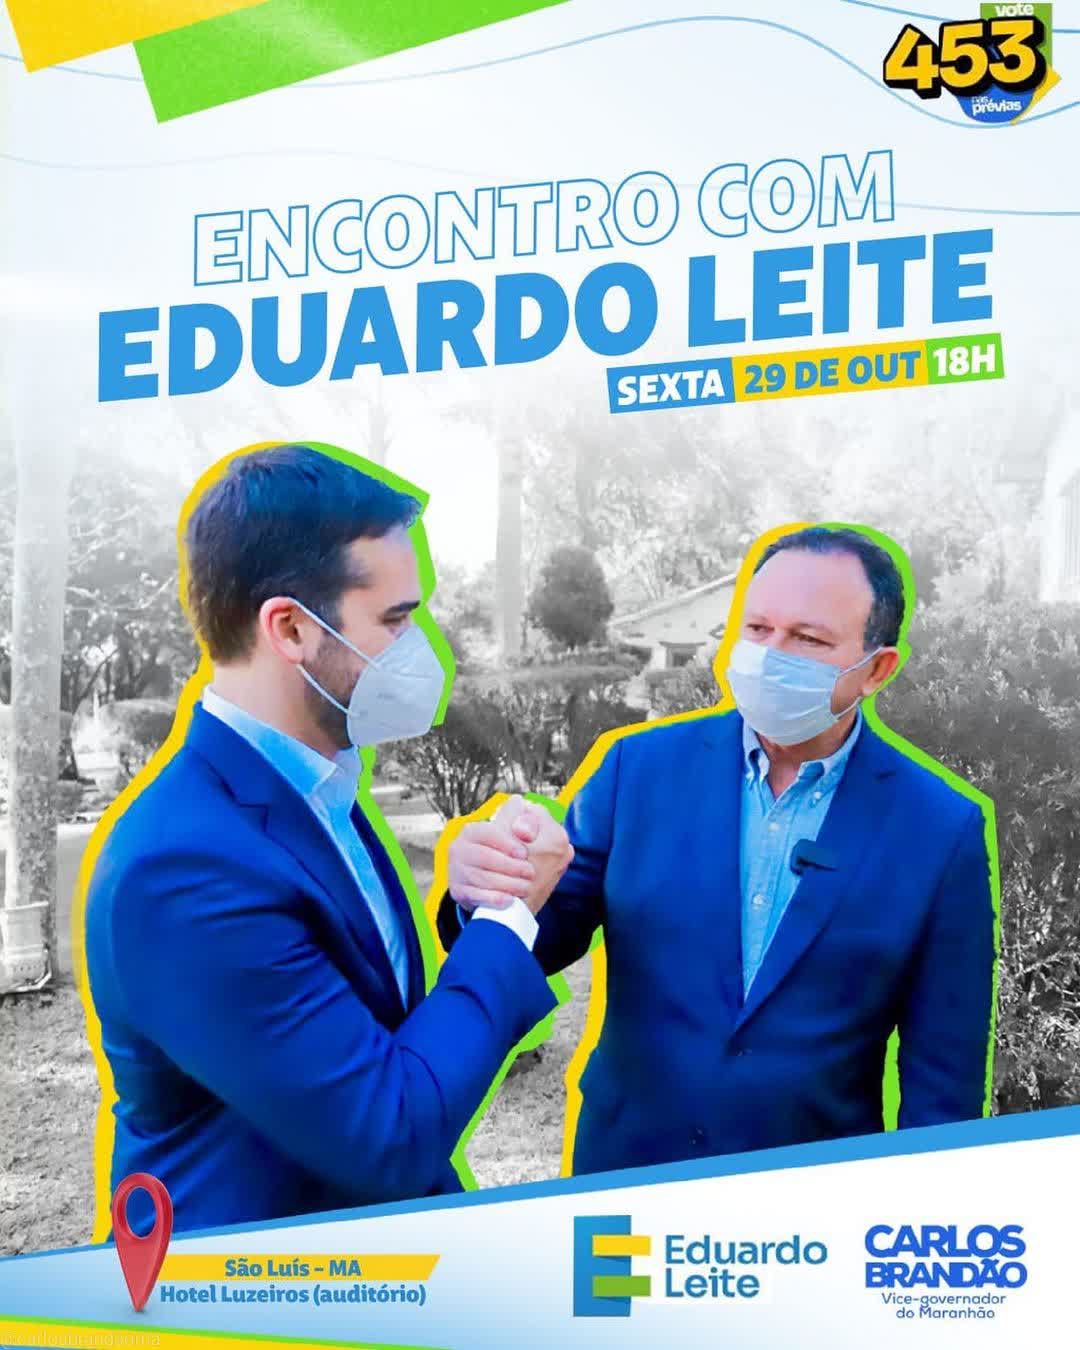 Vice-governador Carlos Brandão fecha apoio a Eduardo Leite nas prévias do PSDB…